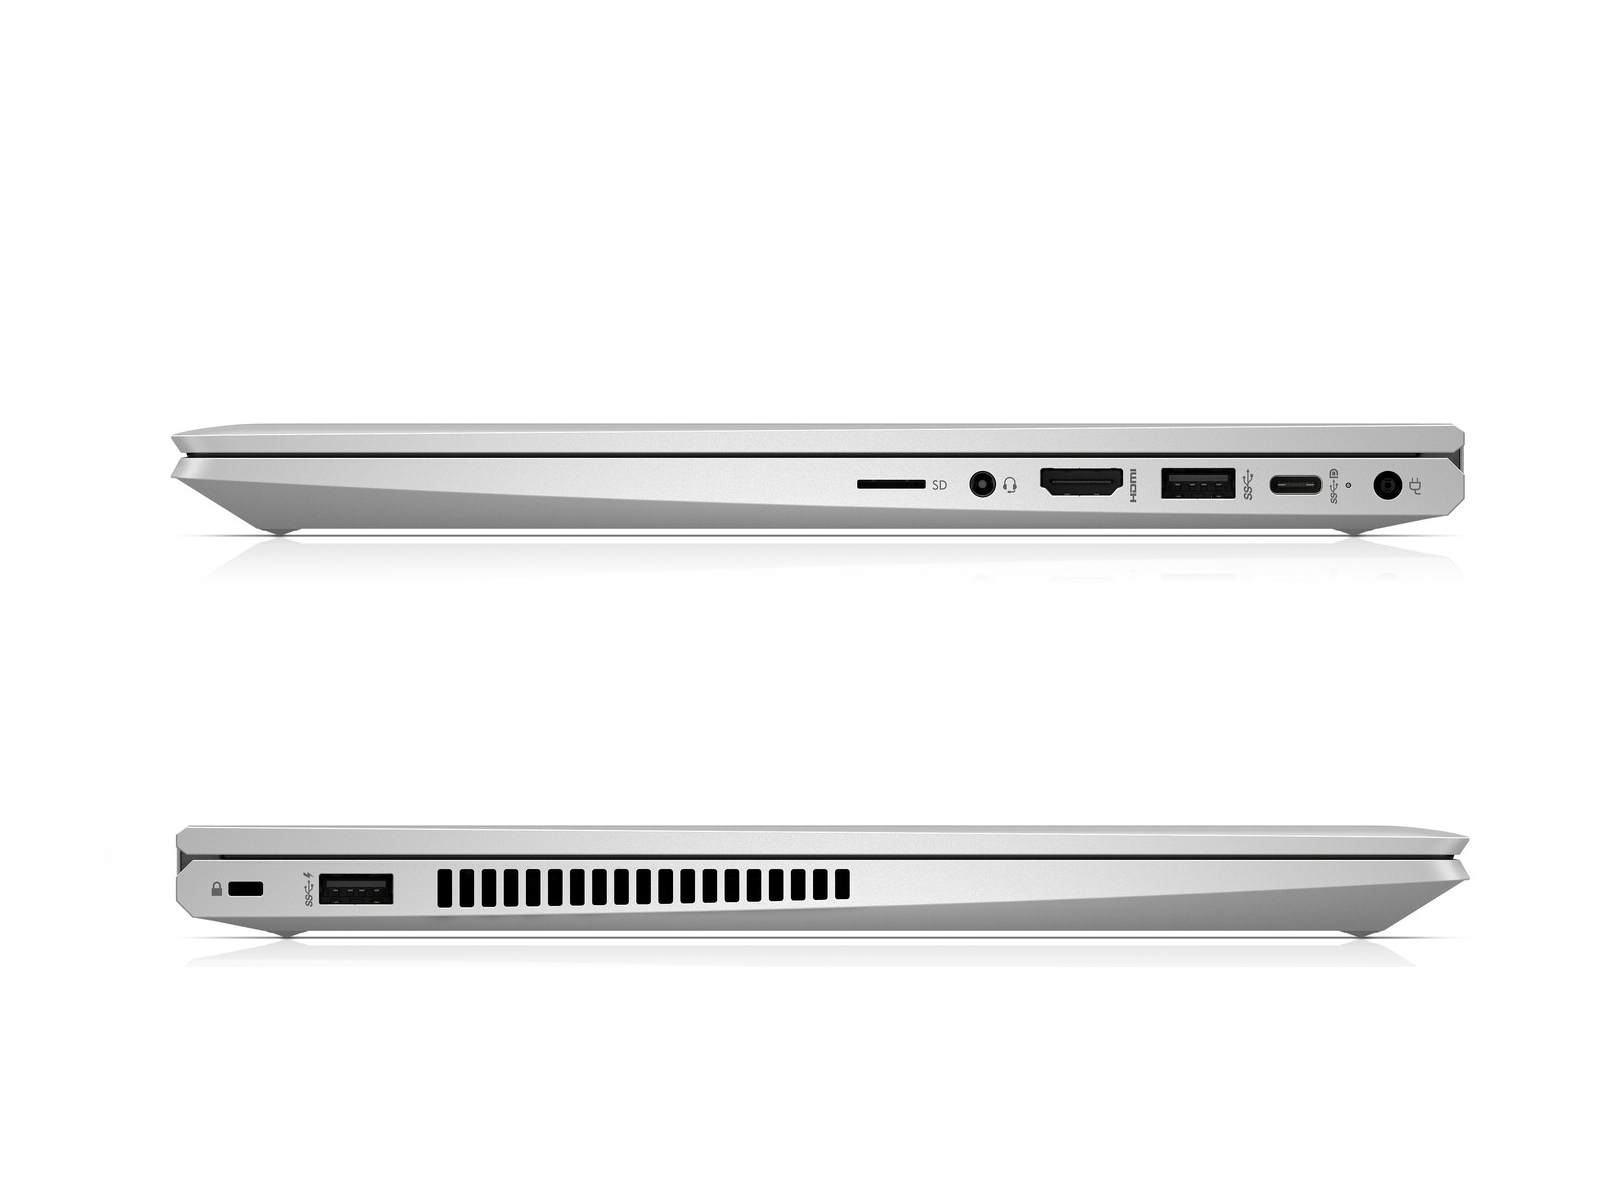 HP ProBook x360 435 G7, Ryzen 5 4500U